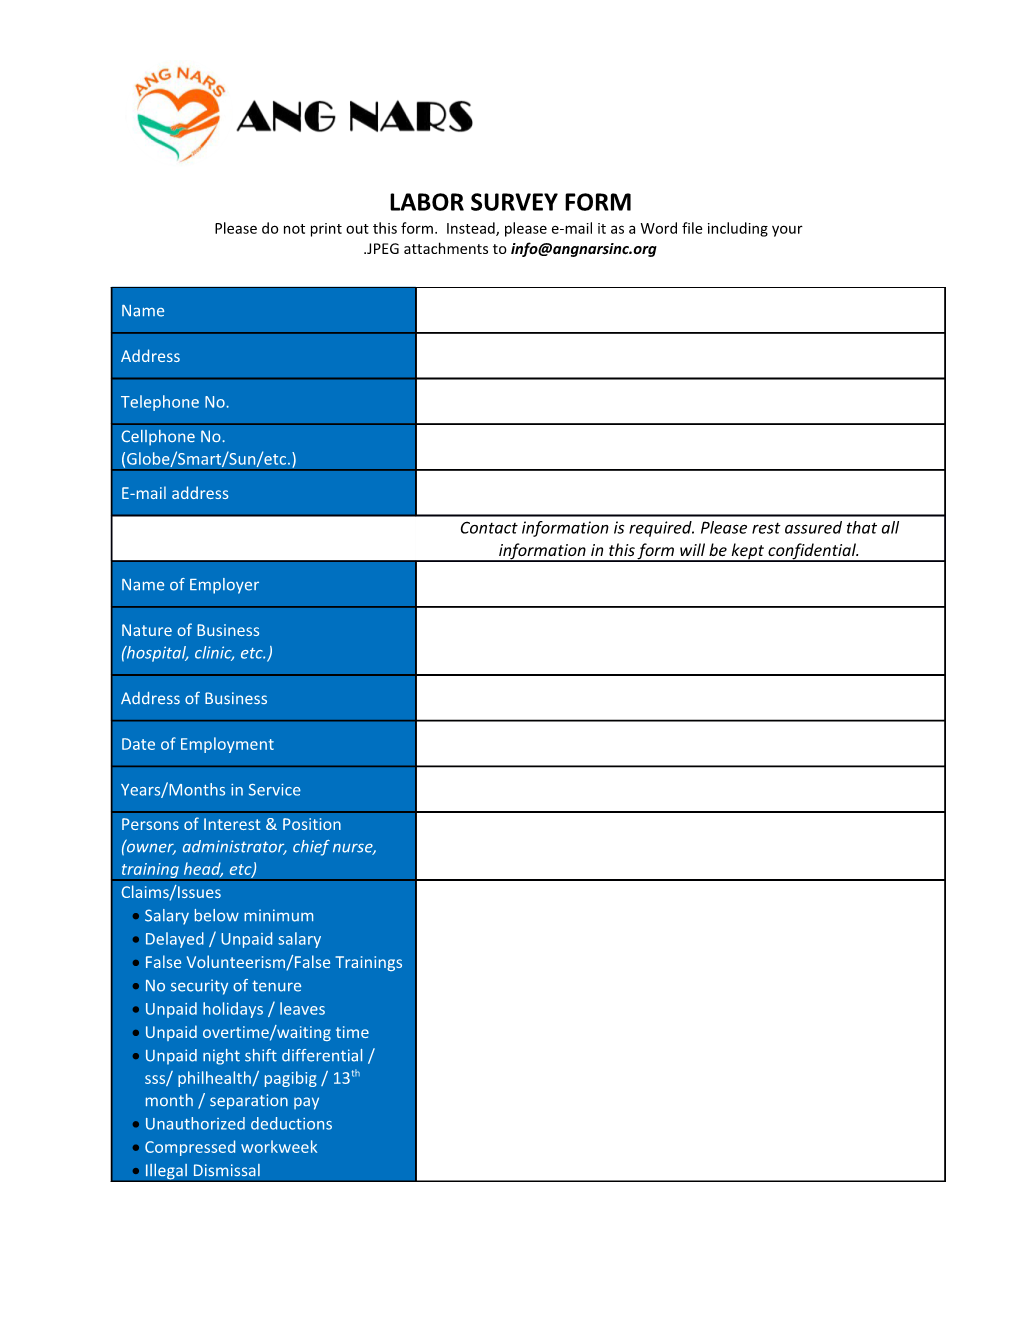 Labor Survey Form